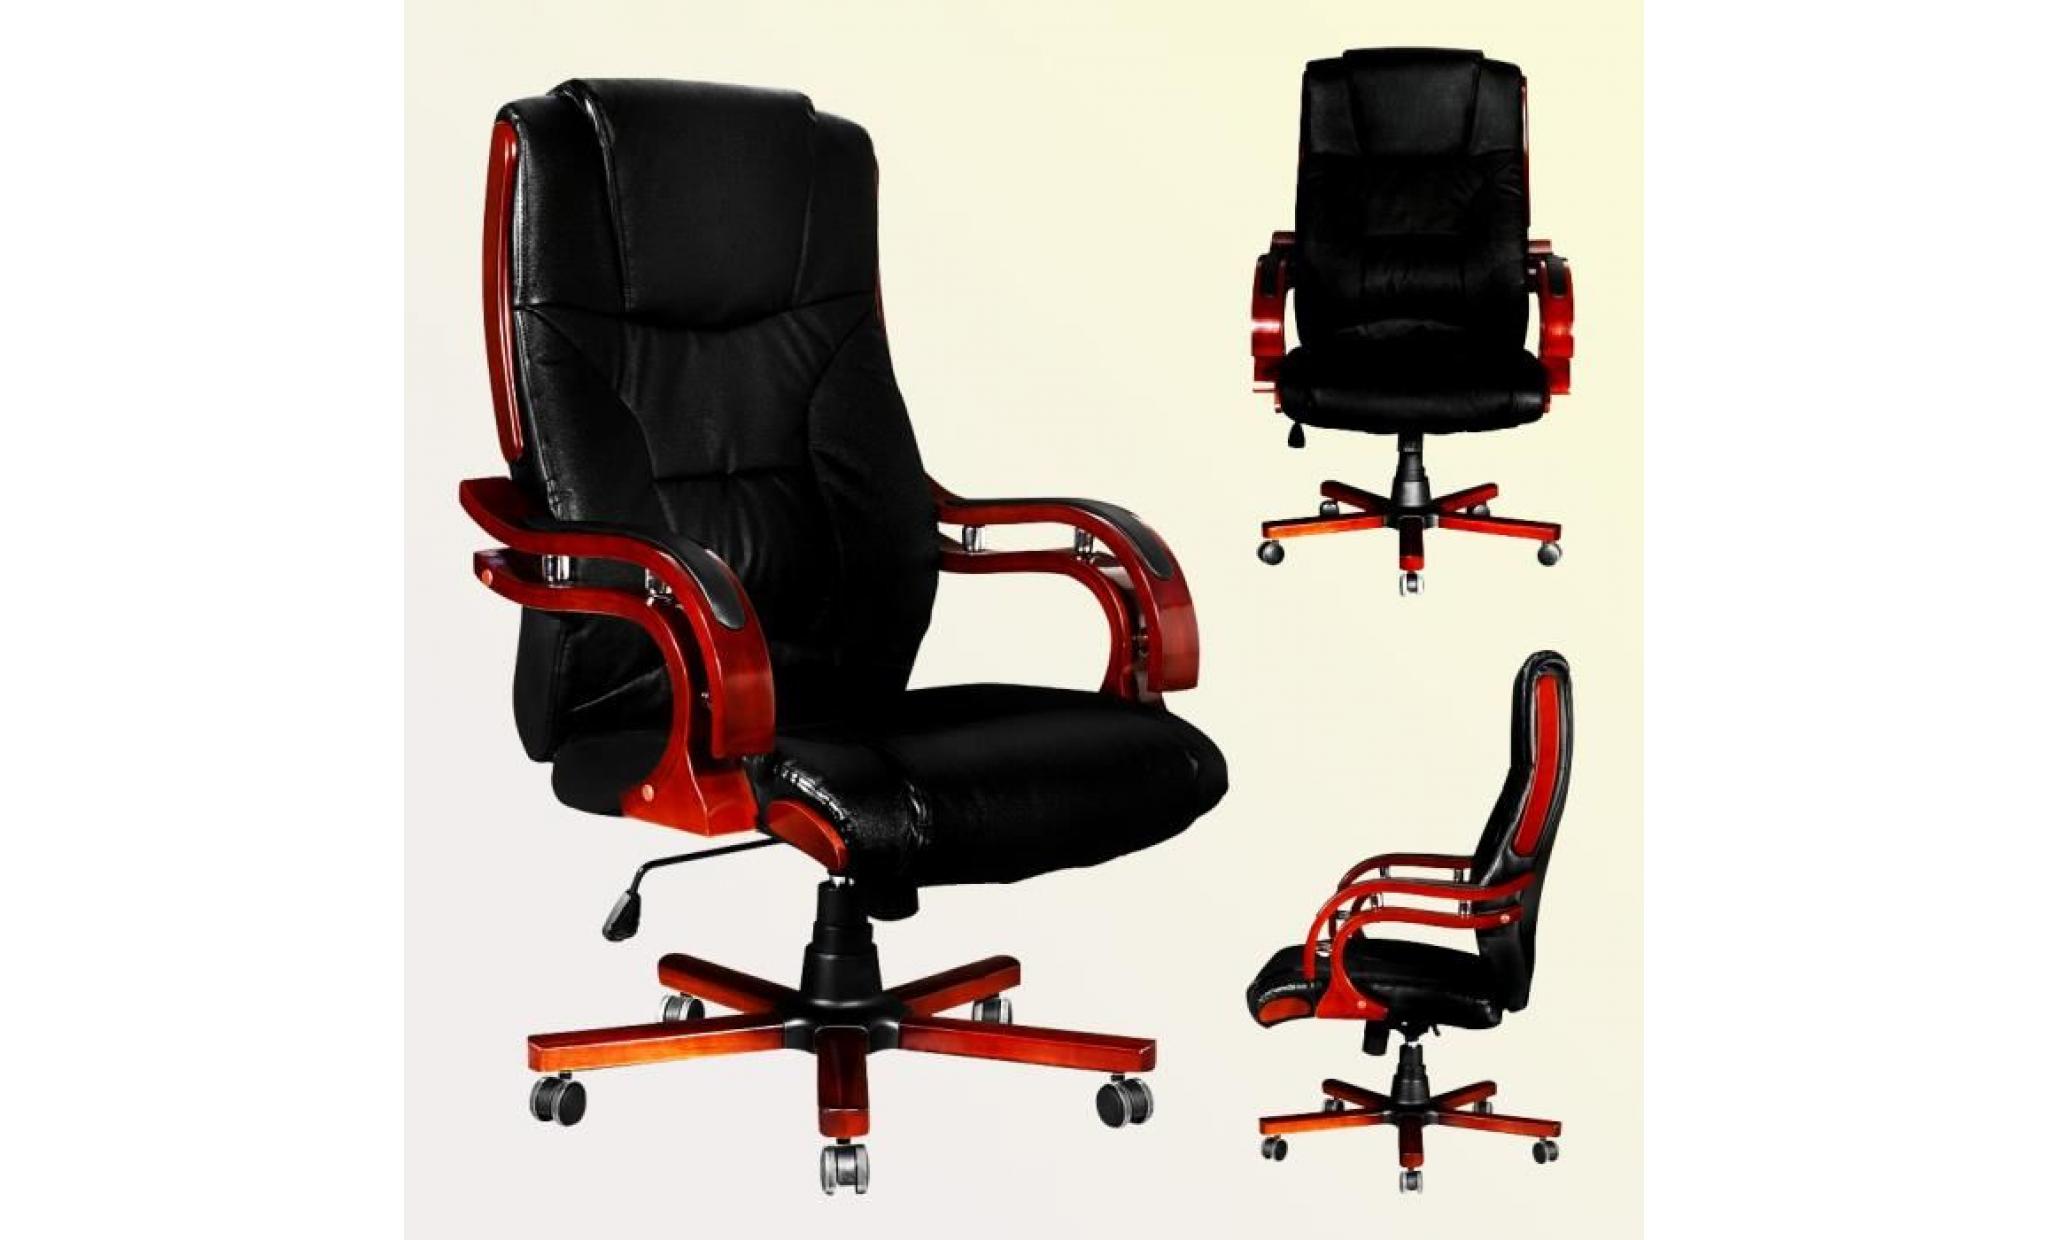 fauteuil direction chaise en cuir noir design rétro l moderne confort pour bureau réglable pratique pas cher